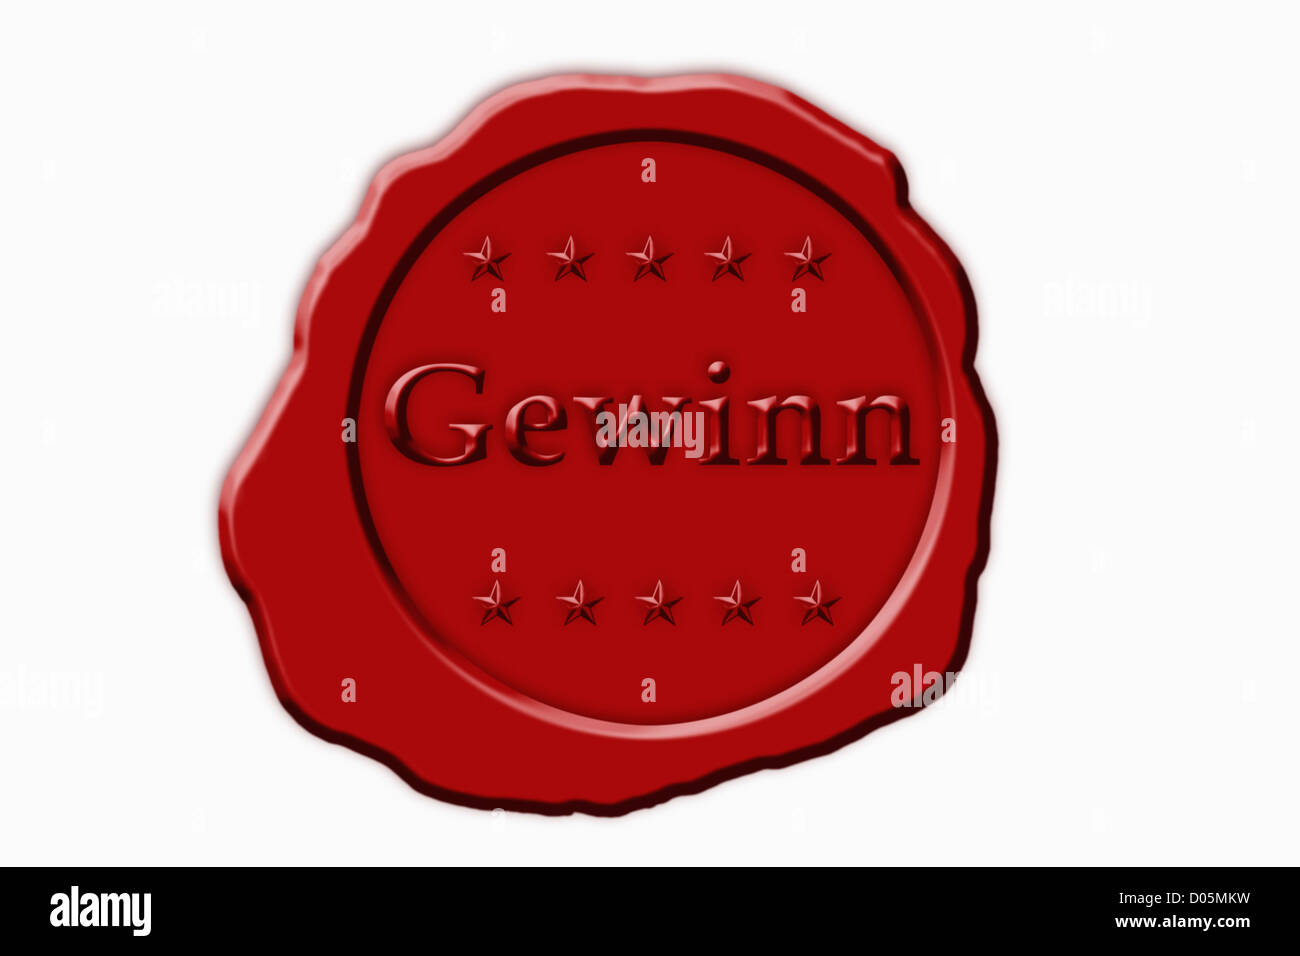 Detailansicht eines roten Siegels mit der Aufschrift Gewinn | Dettaglio foto di un sigillo rosso con la scritta in tedesco guadagnare Foto Stock